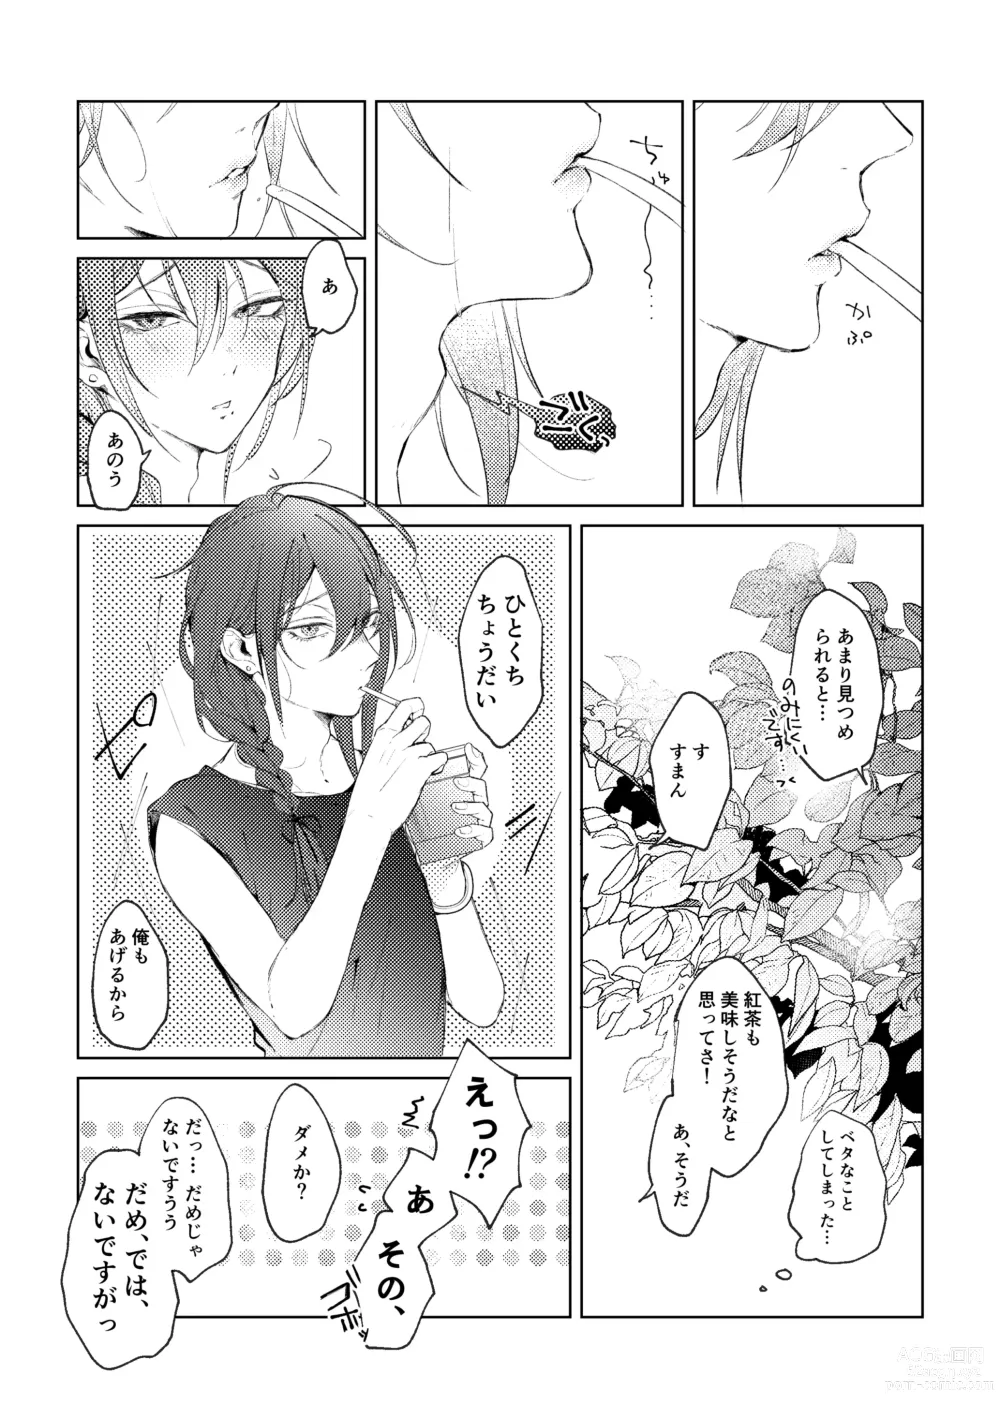 Page 11 of doujinshi Ore no Kanojo no Mayoi-kun.